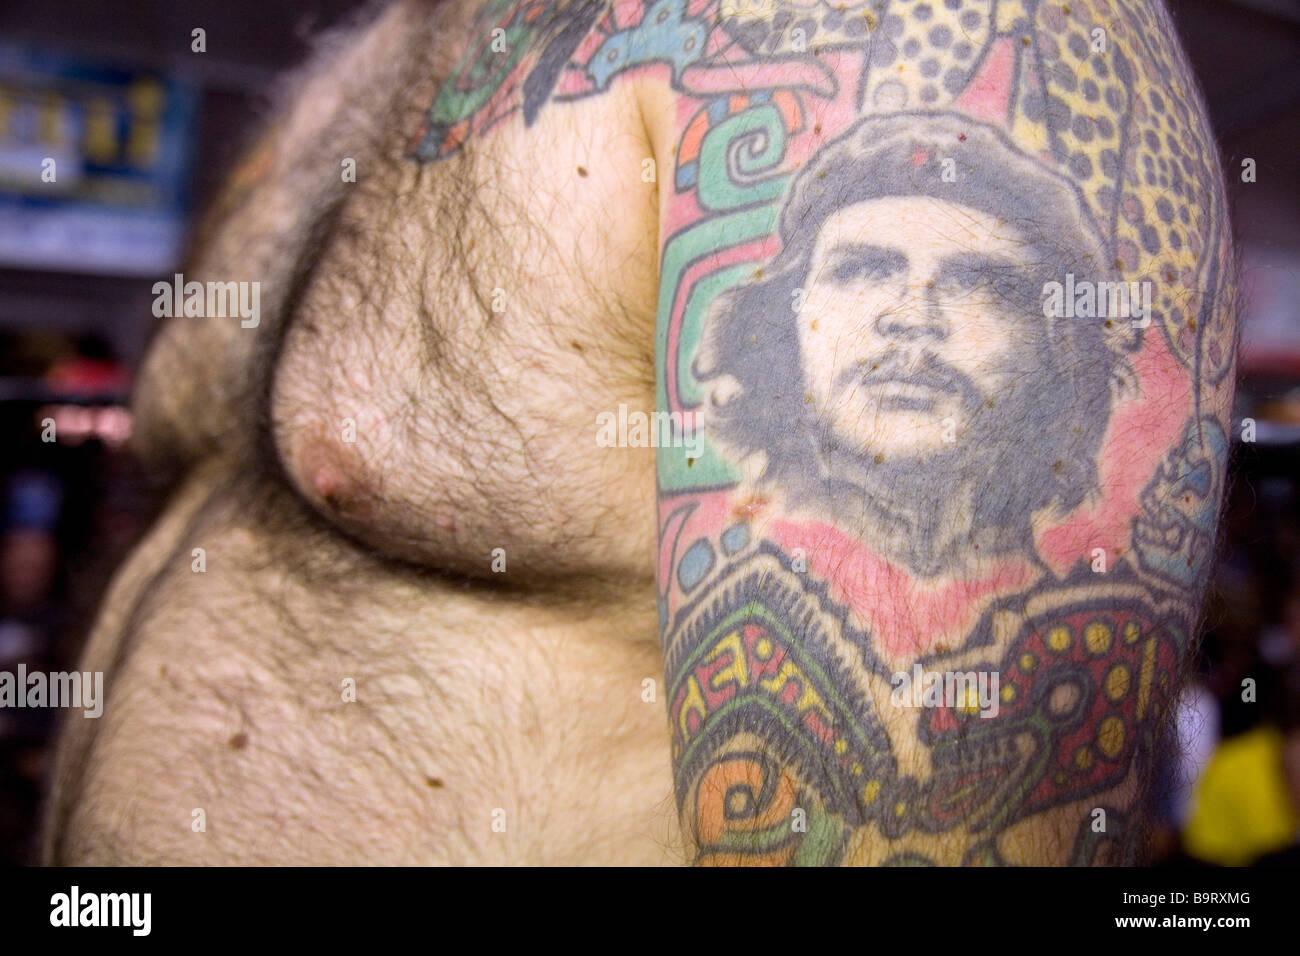 Man with a tattoo depicting Che Guevara near Bergamo, Italy Stock Photo